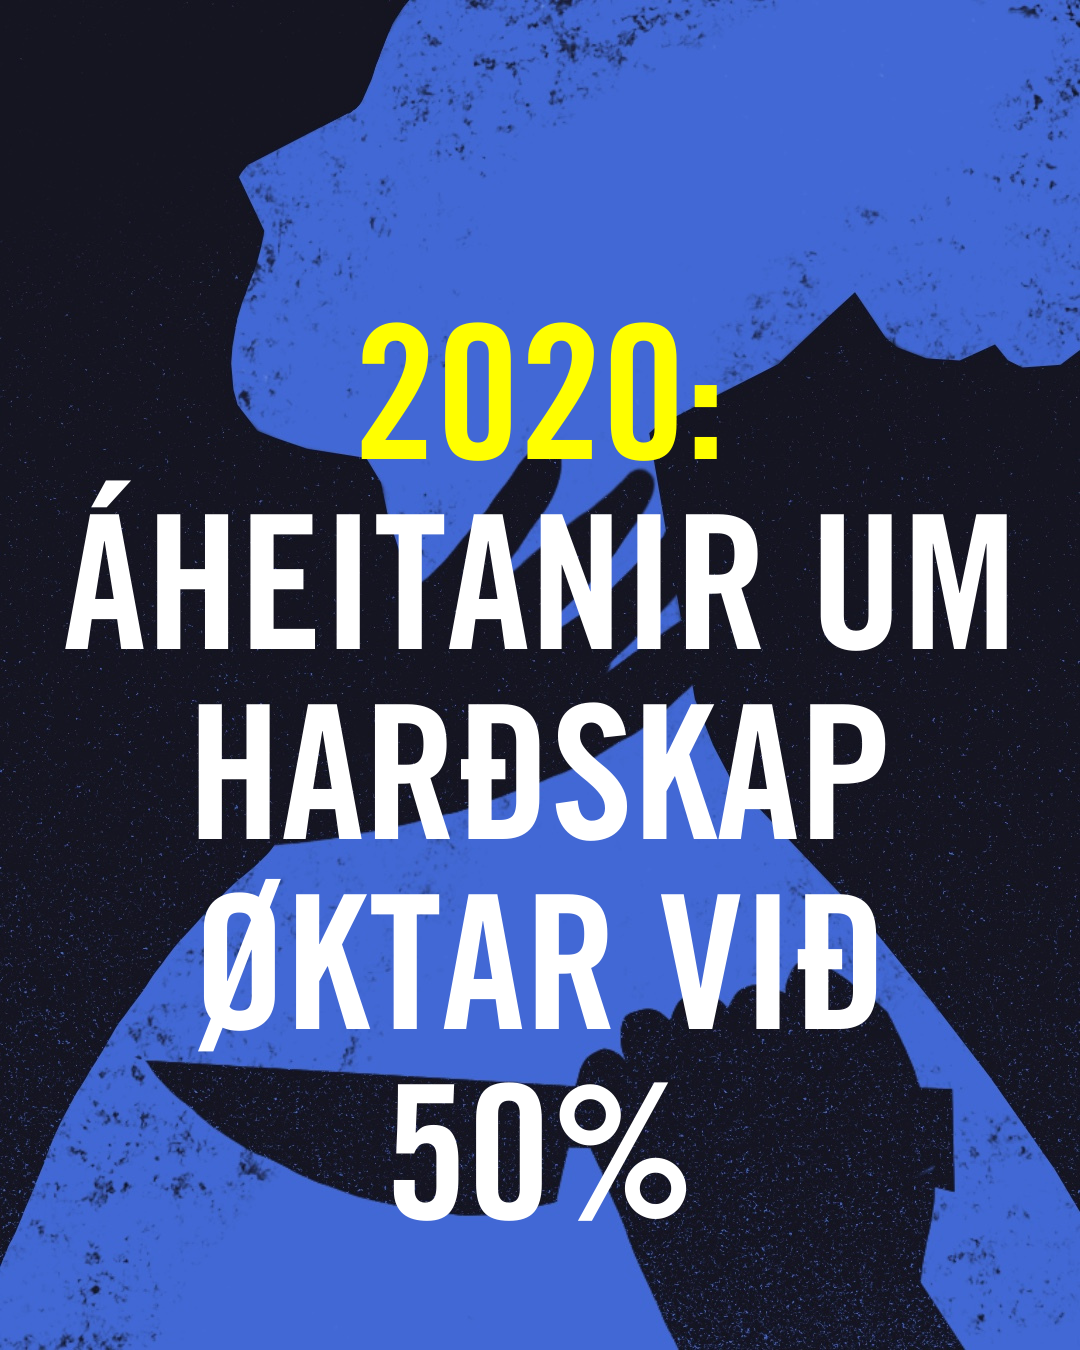 2020: Áheitanir um harðskap øktar við 50%